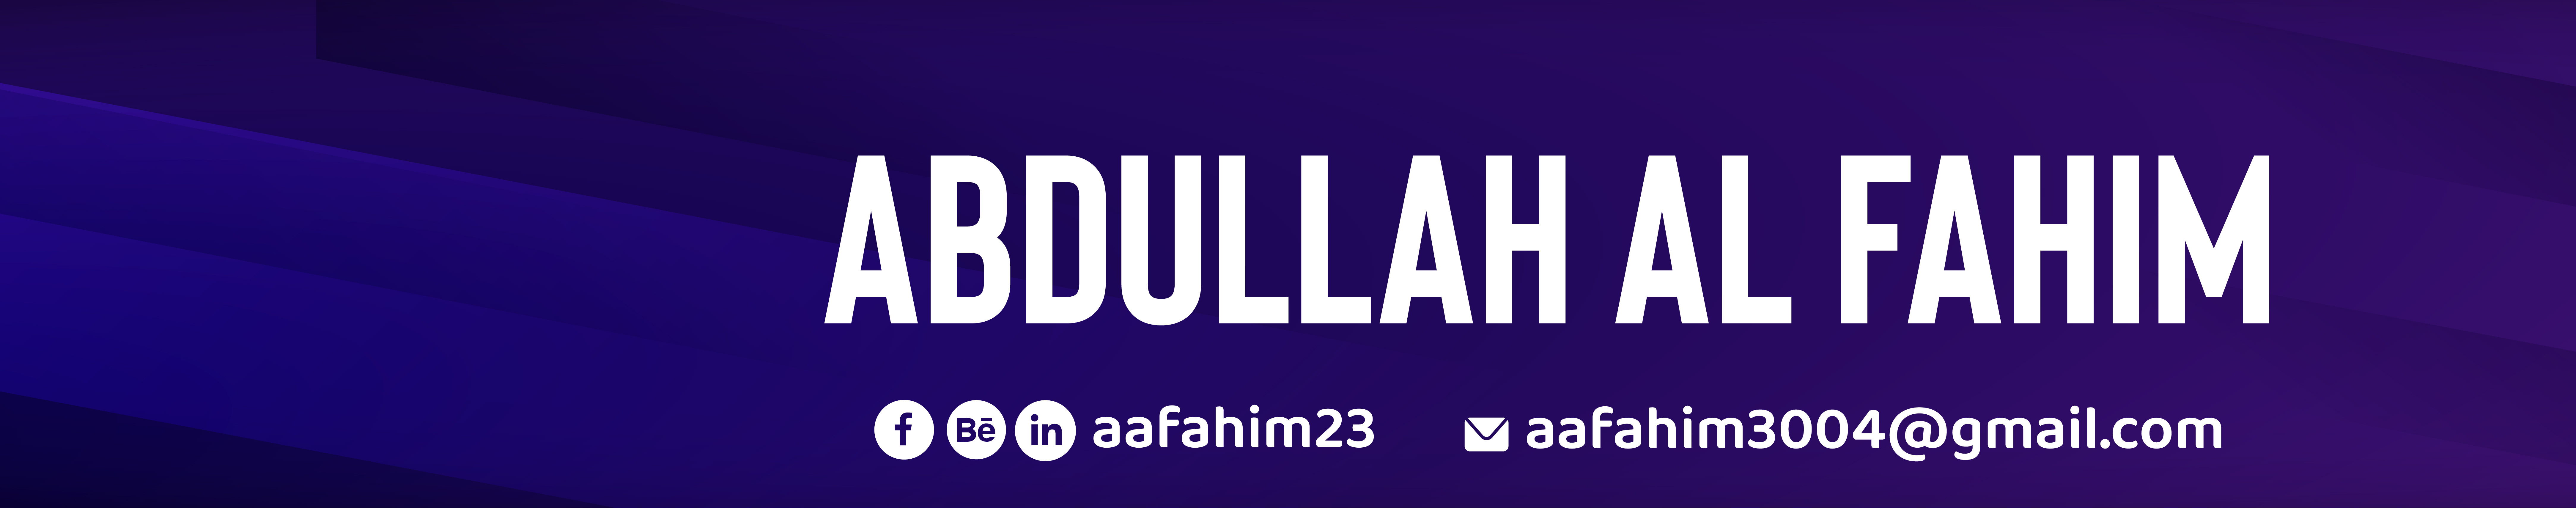 Abdullah Al Fahim's profile banner